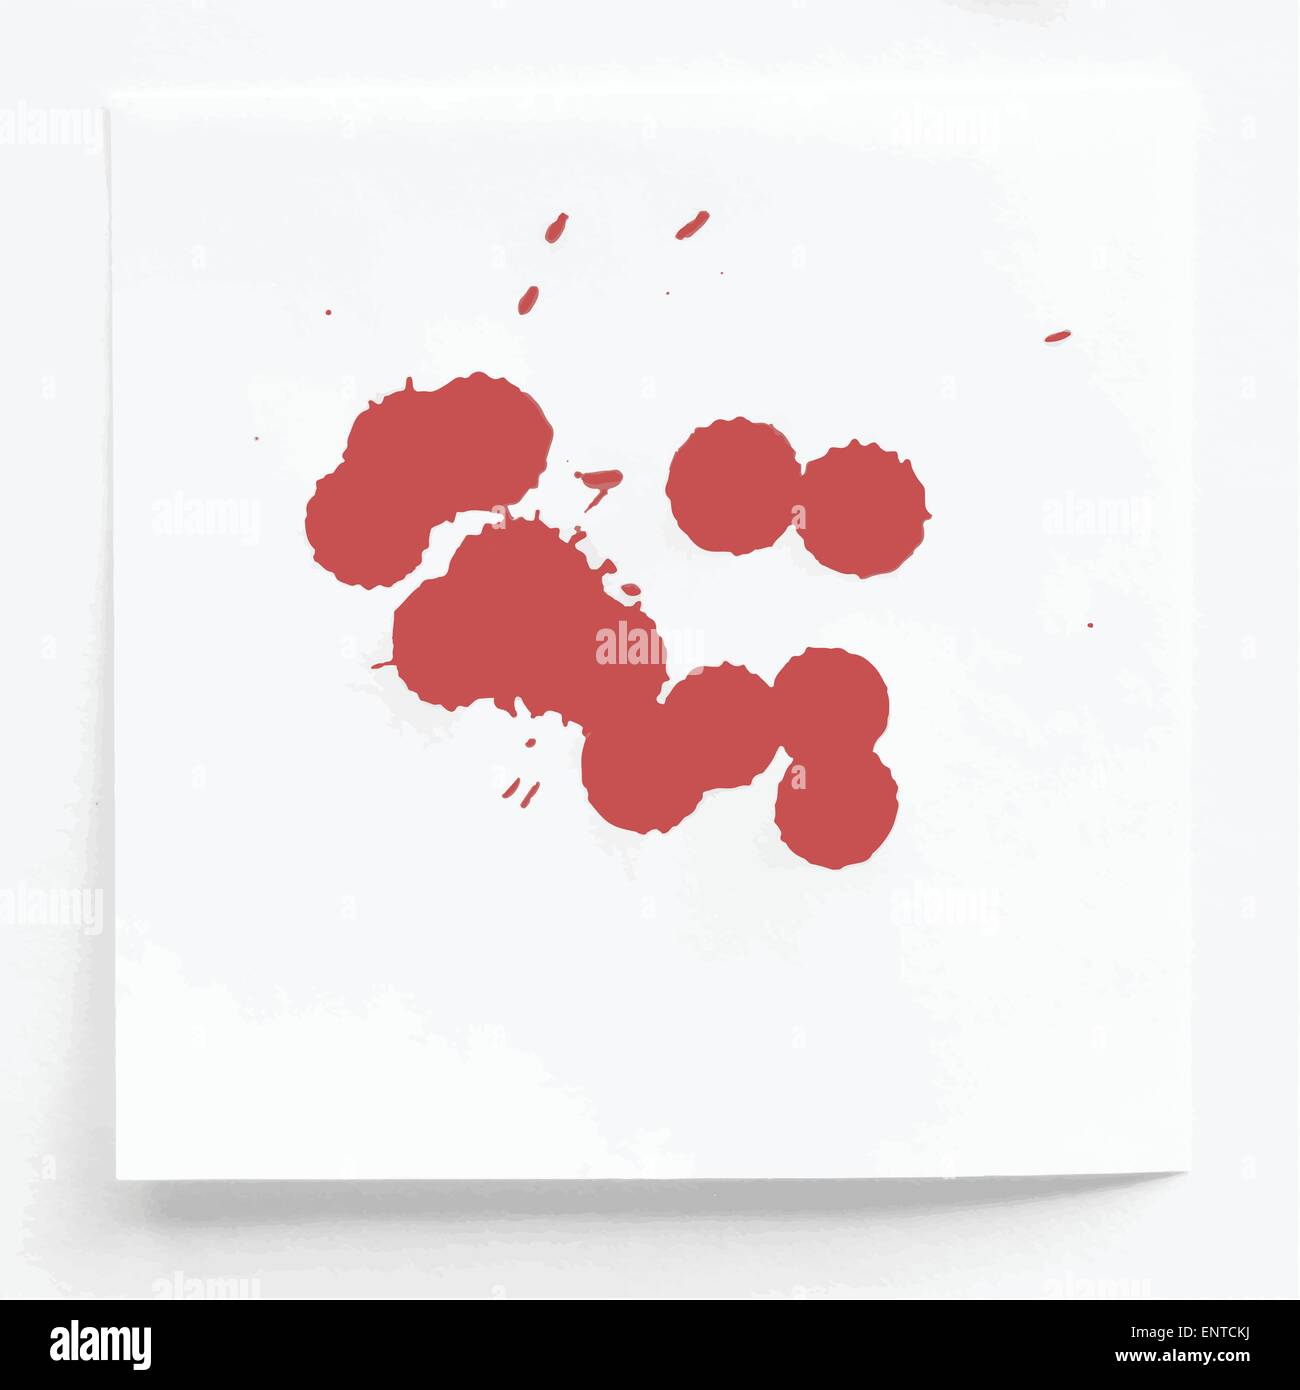 L'encre rouge aquarelle splahs, blots sur papier blanc Illustration de Vecteur